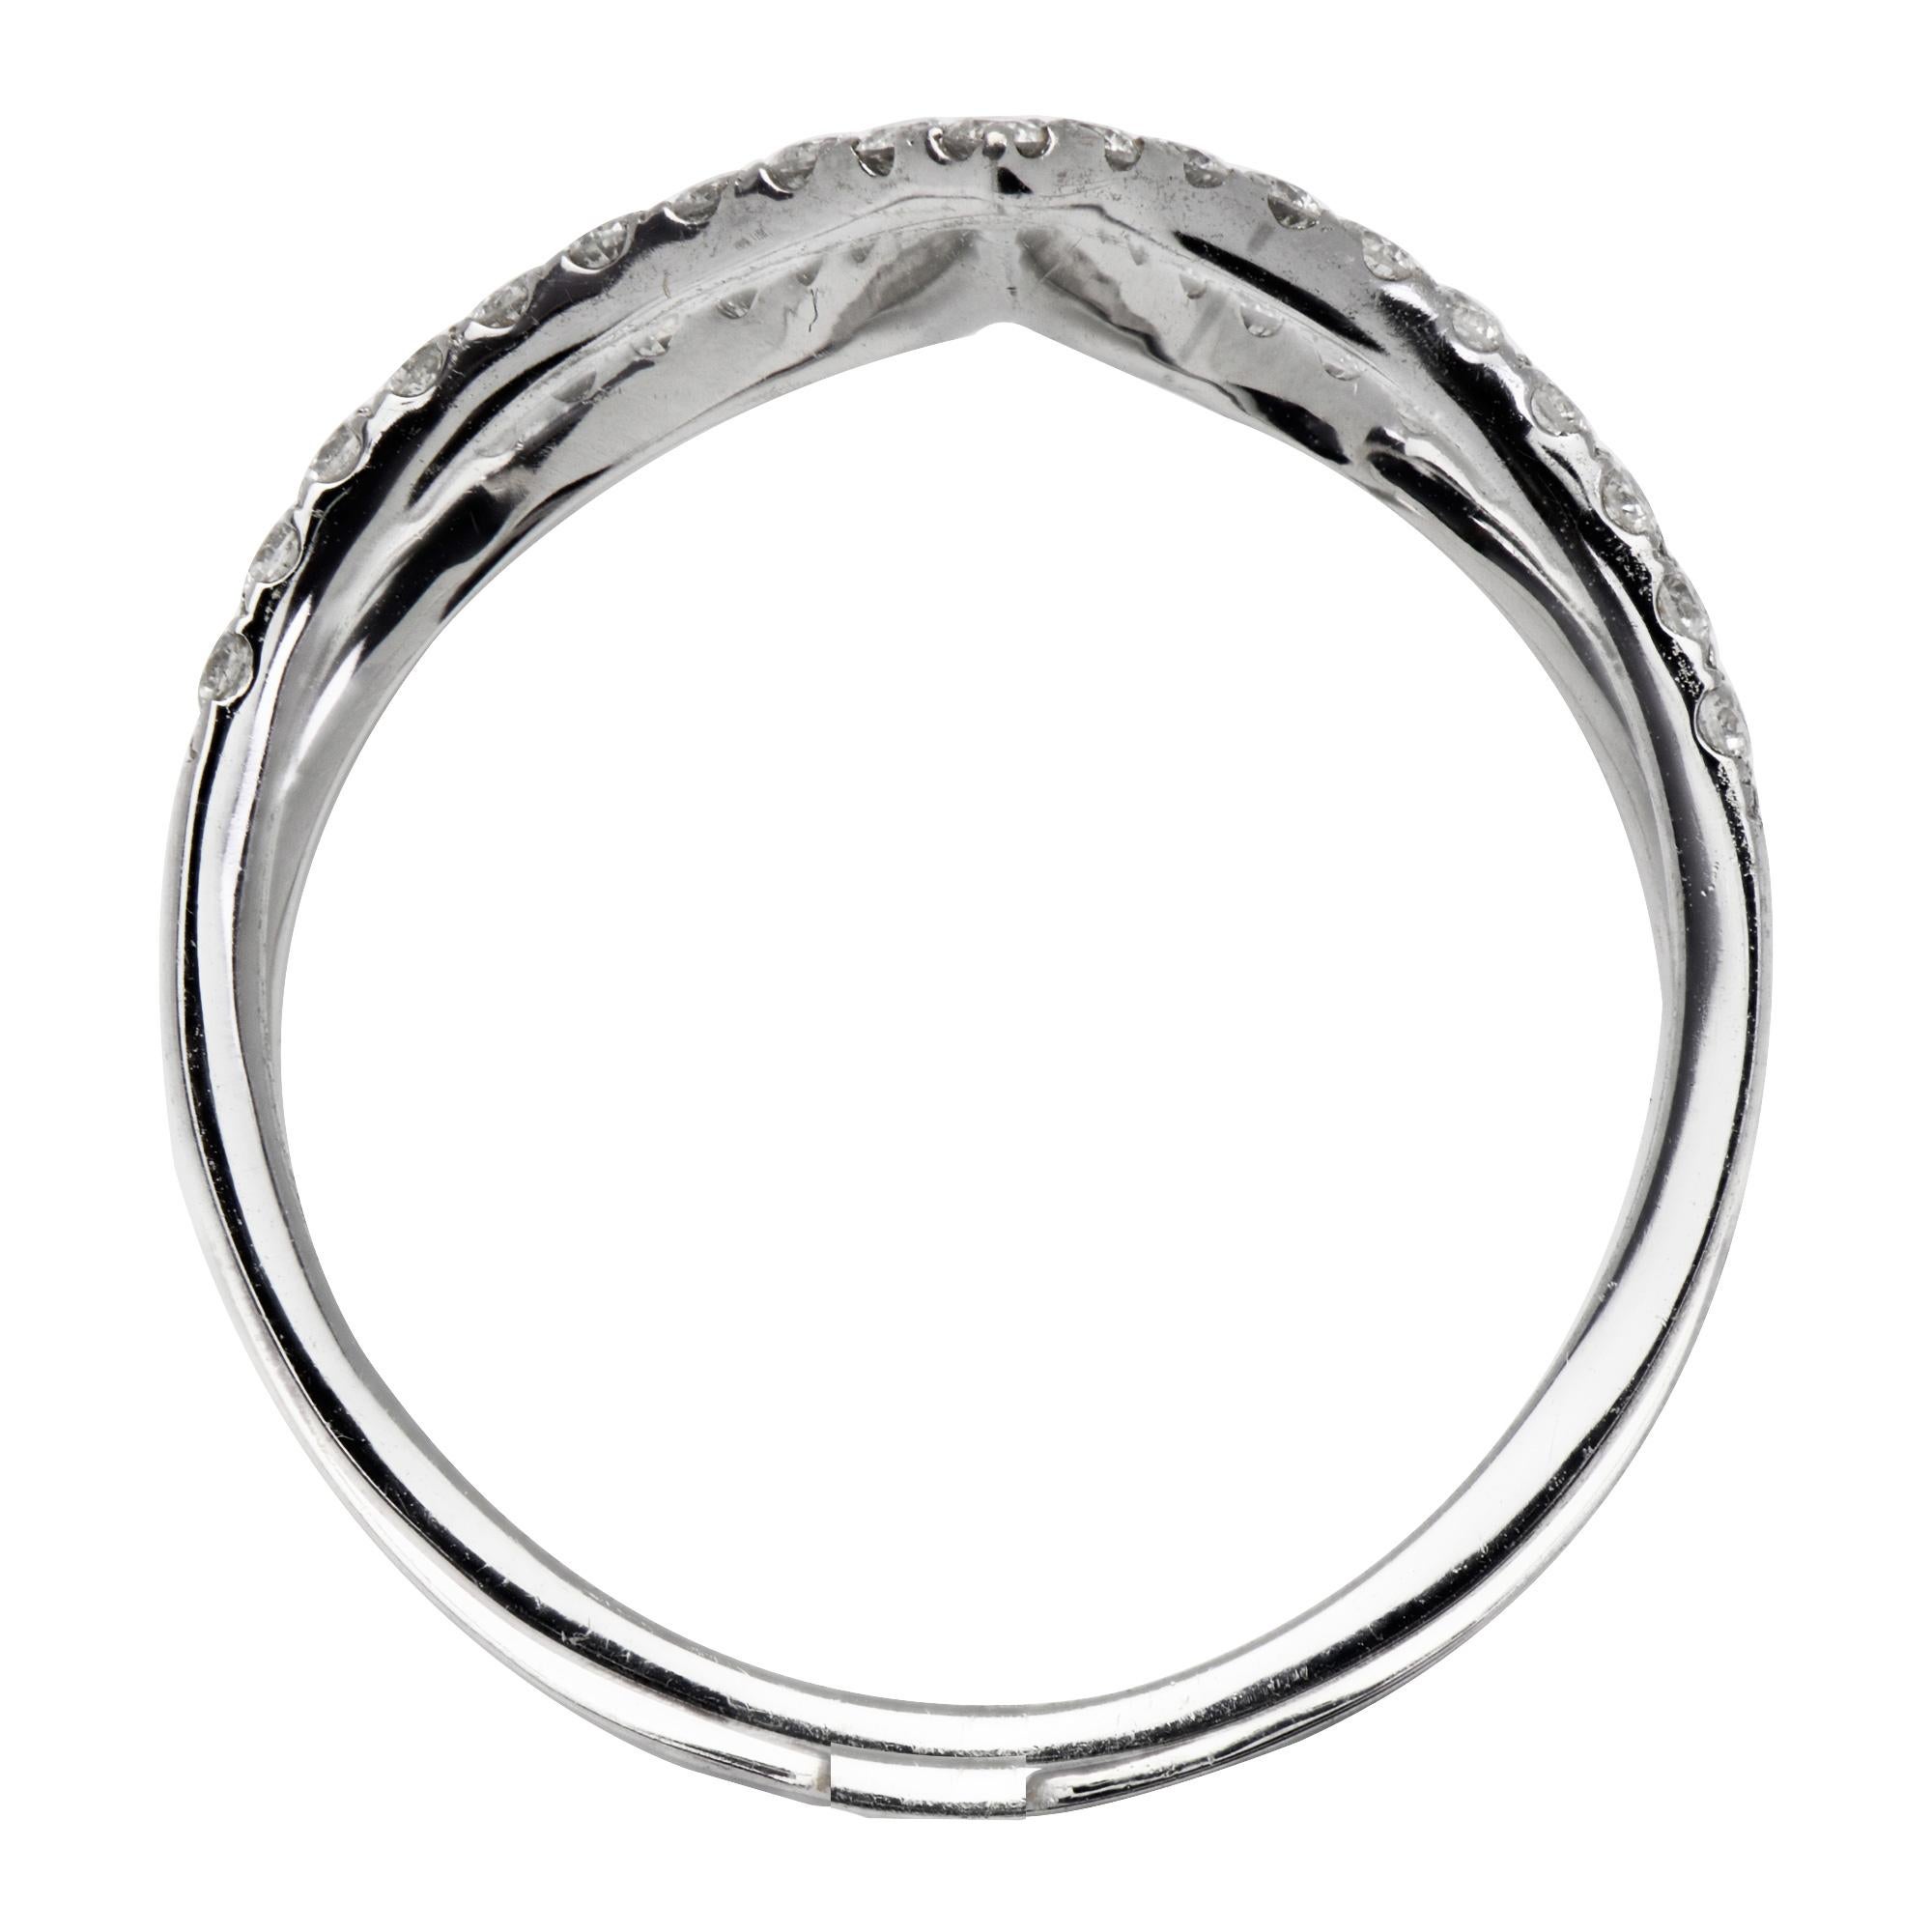 Dieser lustige und stilvolle Ring besteht aus 2,7 Gramm 18 Karat Weißgold. Das Gold ist mit 50 runden Diamanten der Farbe VS2, G von insgesamt 0,5 Karat besetzt. Dieser Ring kann auf beide Arten getragen werden und ist das perfekte Accessoire.